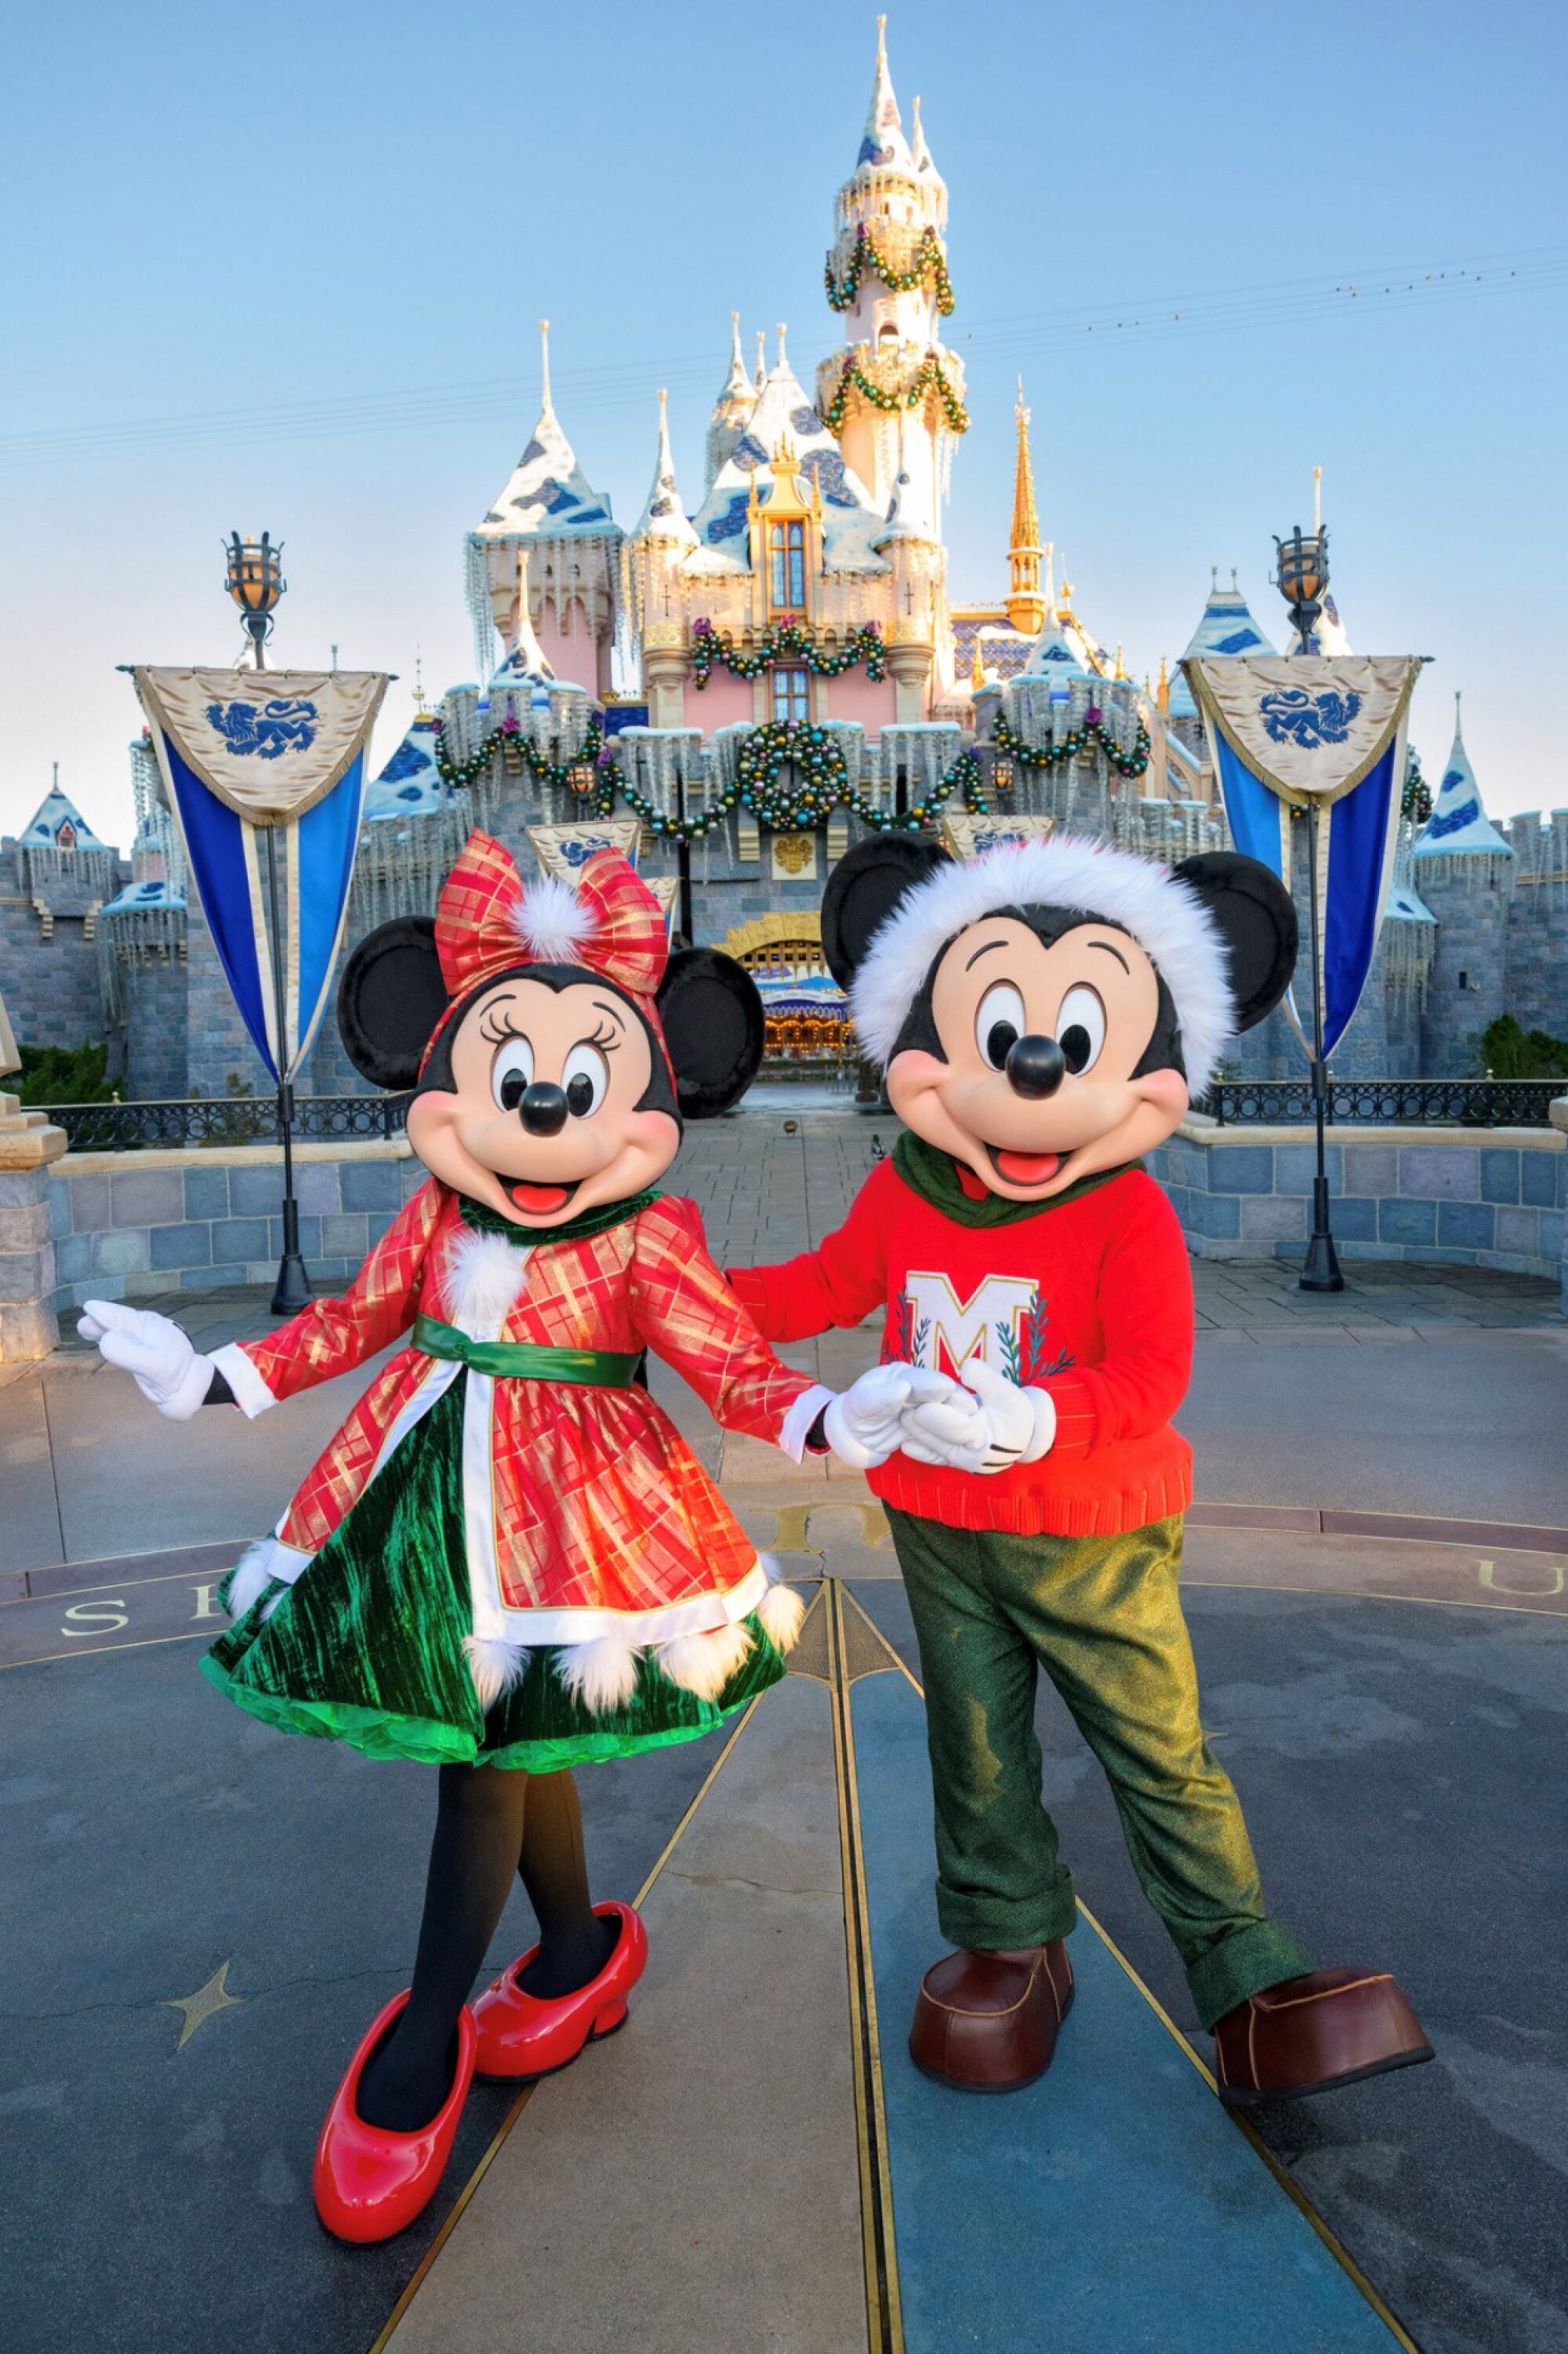 Mickey Y Minnie encabezan las celebraciones del "Festival of Holiday" de Disneyland Resort.